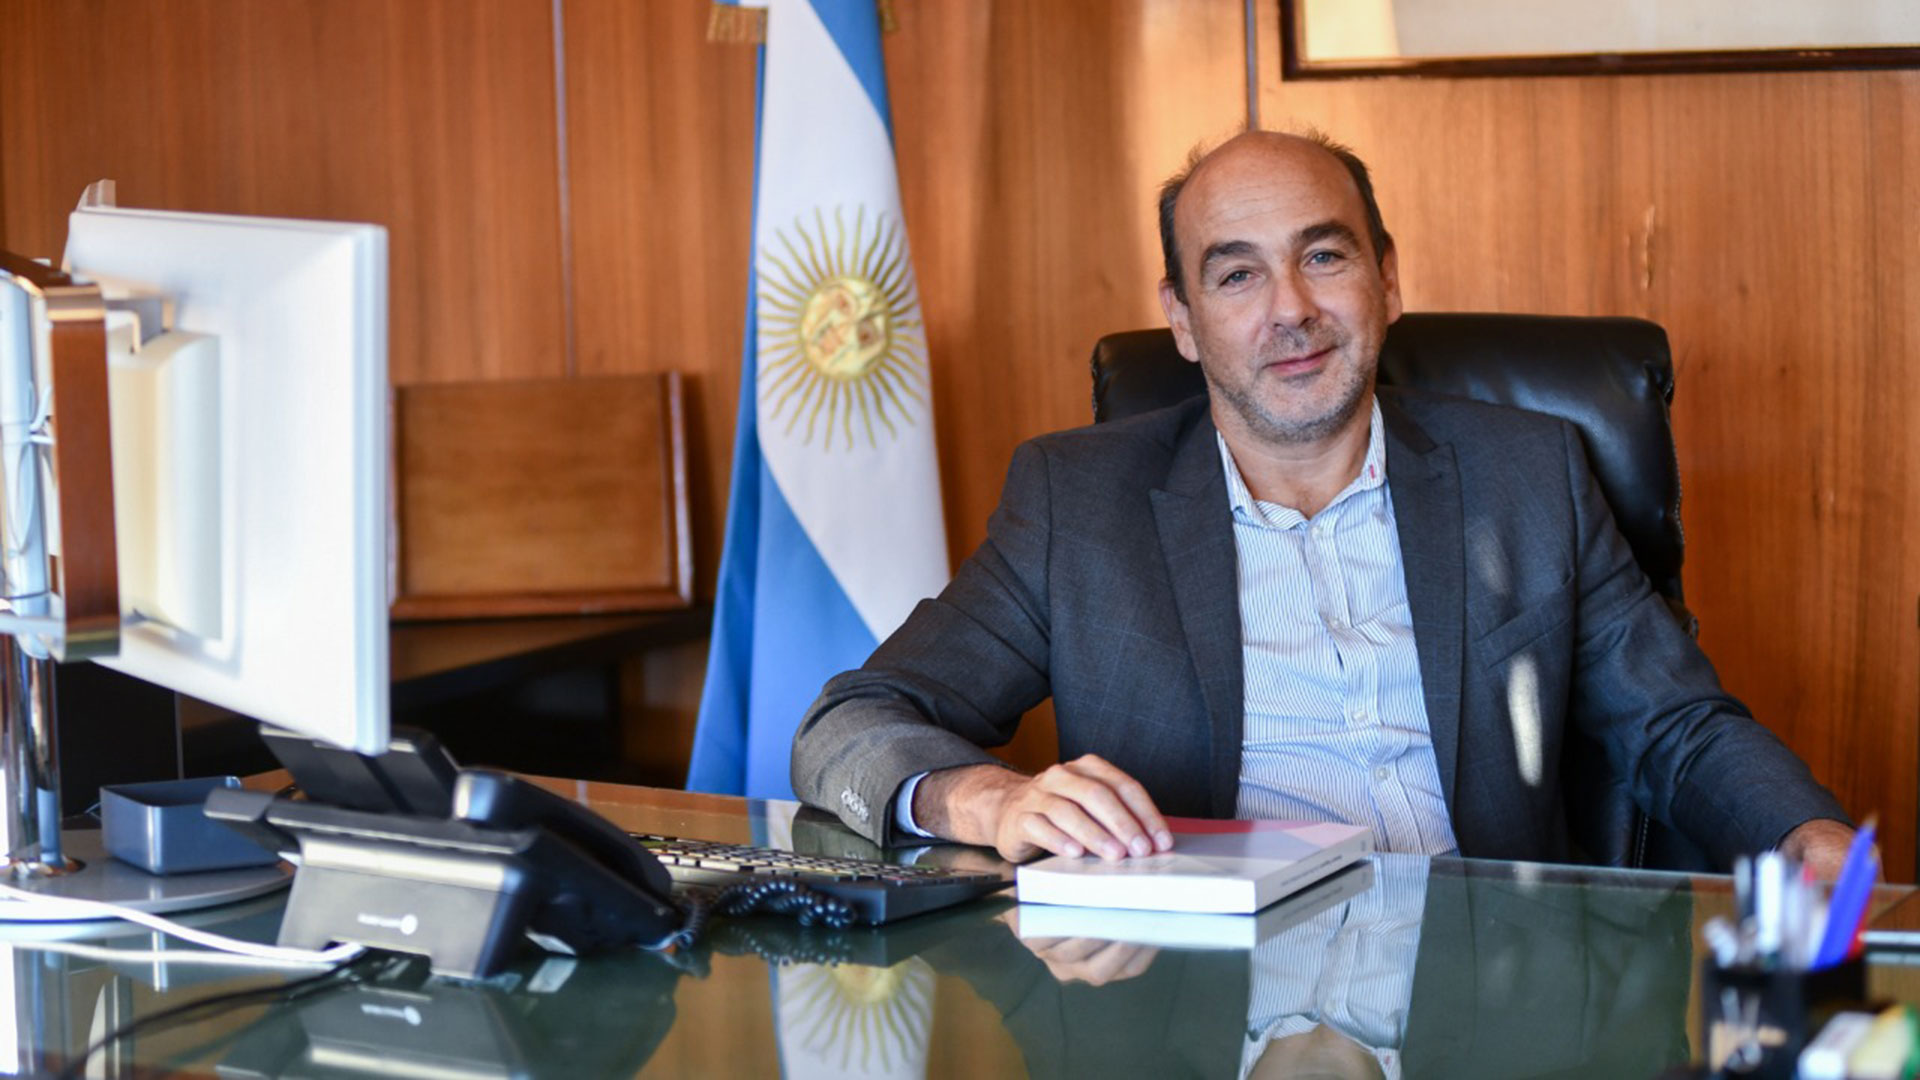 Eduardo Cetti, Financial Secretary